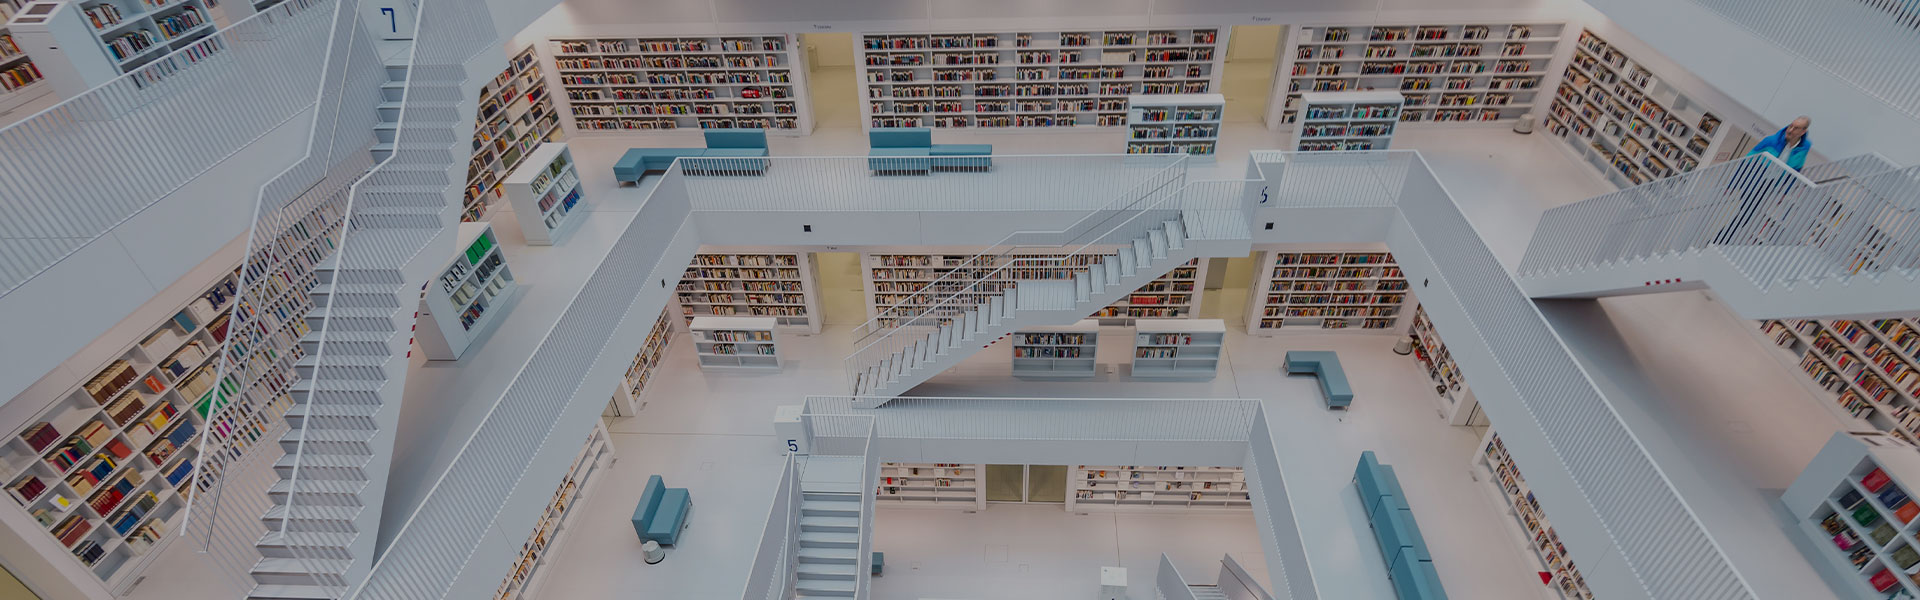 Ansicht von oben auf große, offene Bibliothek